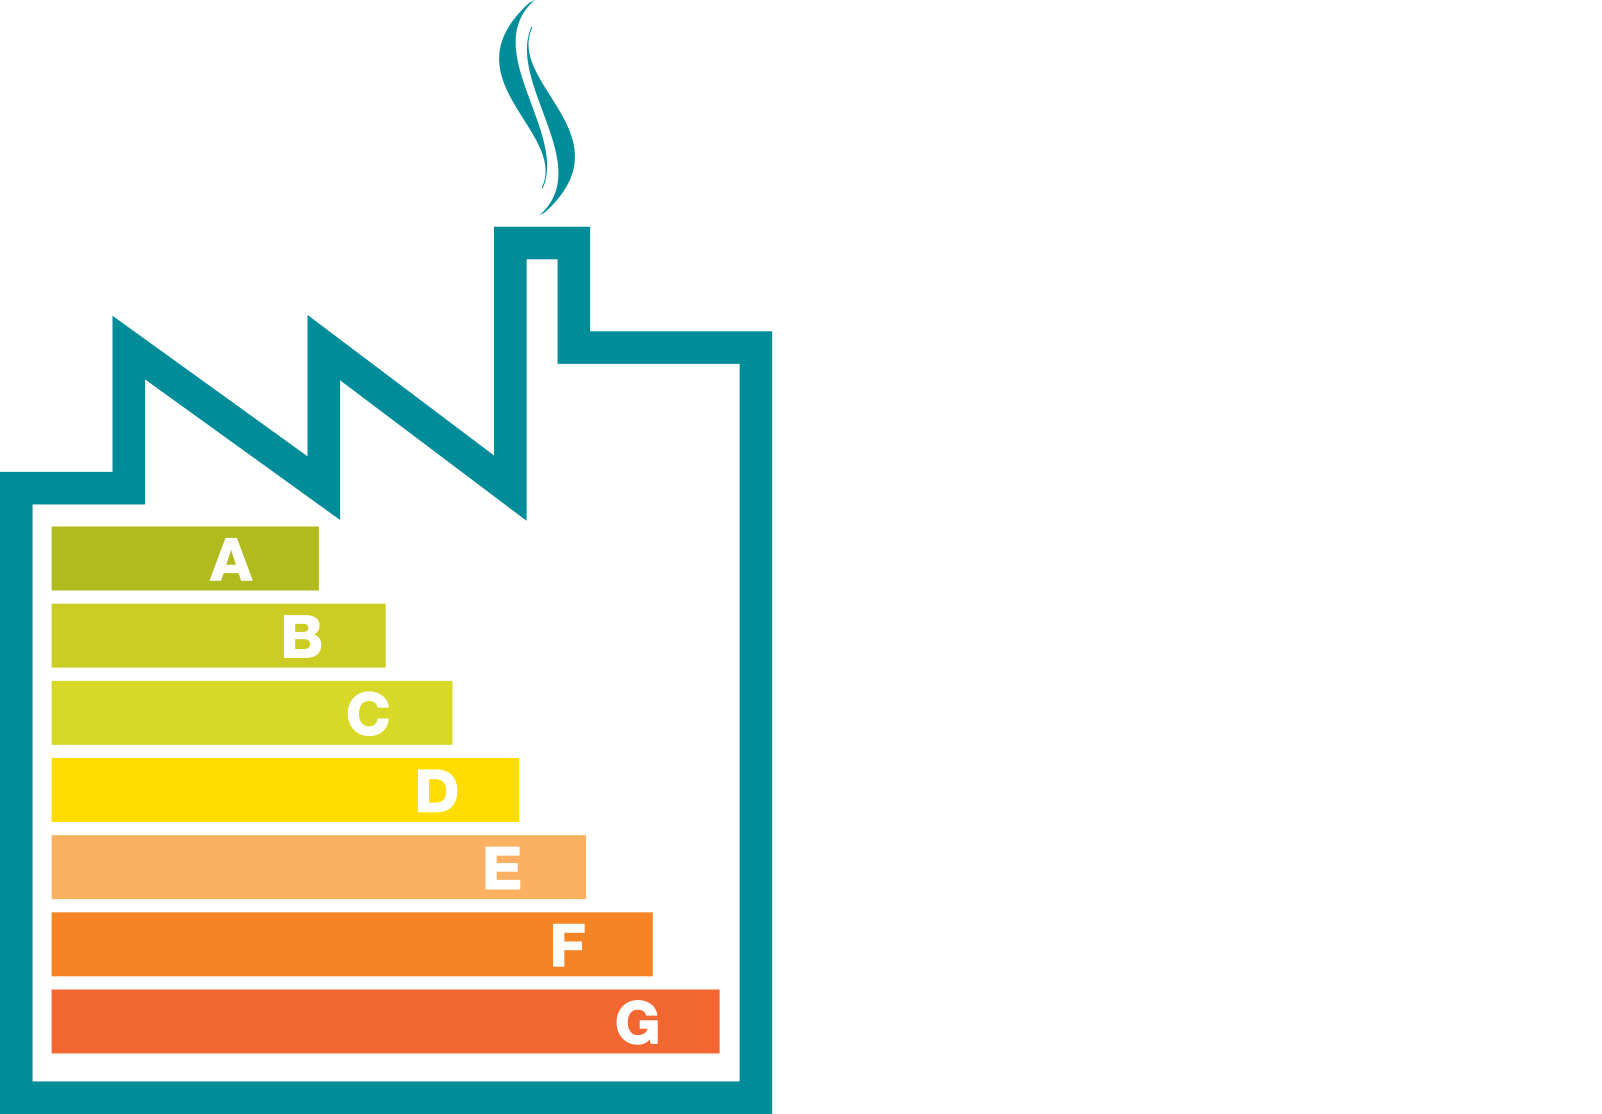 Wise Energy (UK)